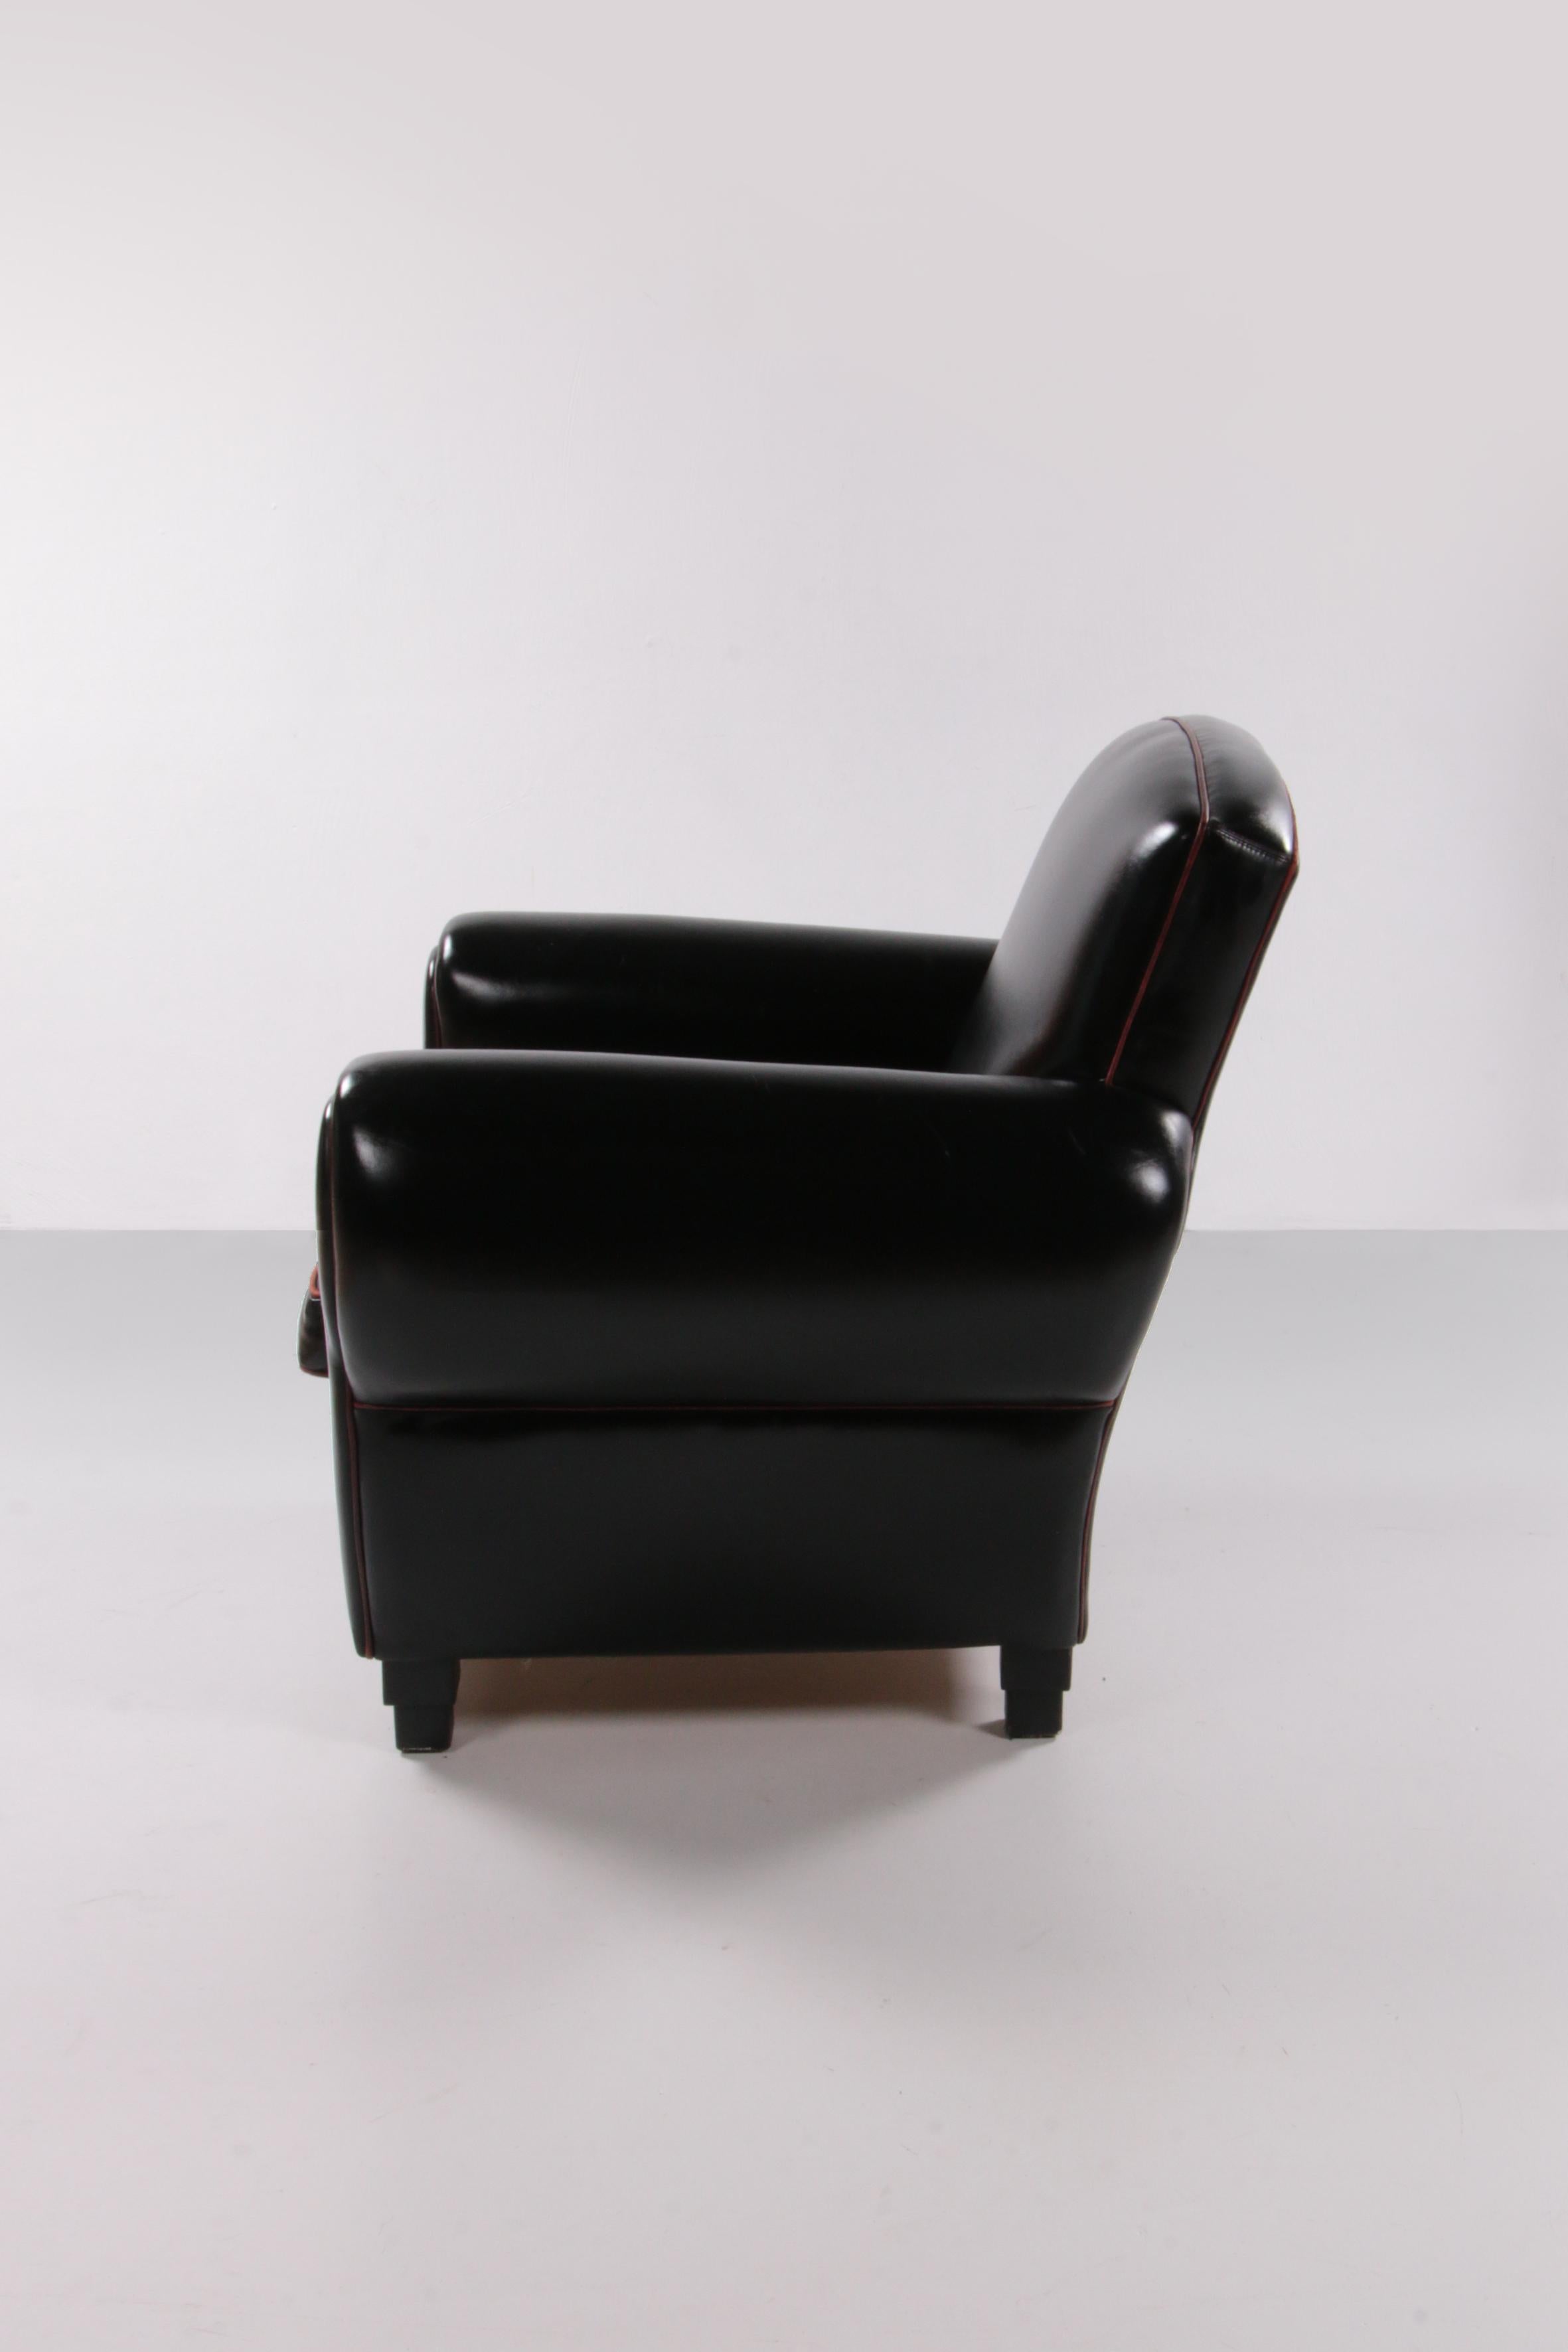 Fin du 20e siècle Fauteuil en cuir très confortable et magnifique de la collection LA Lounge Atelier en vente